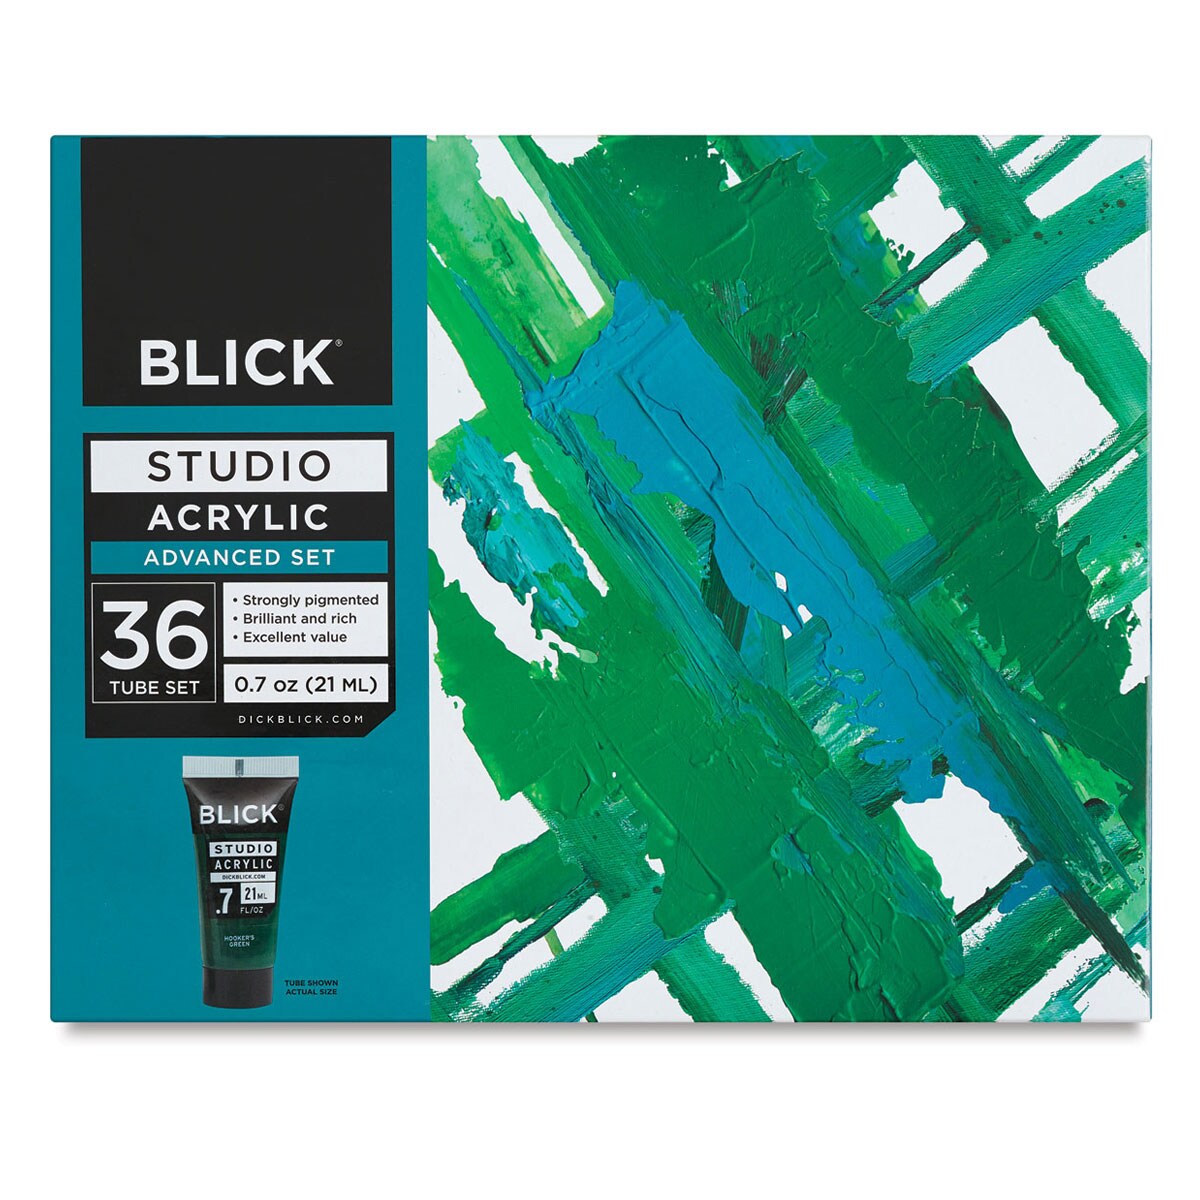 Blick Studio Acrylics - Yellow Oxide, 4 oz tube